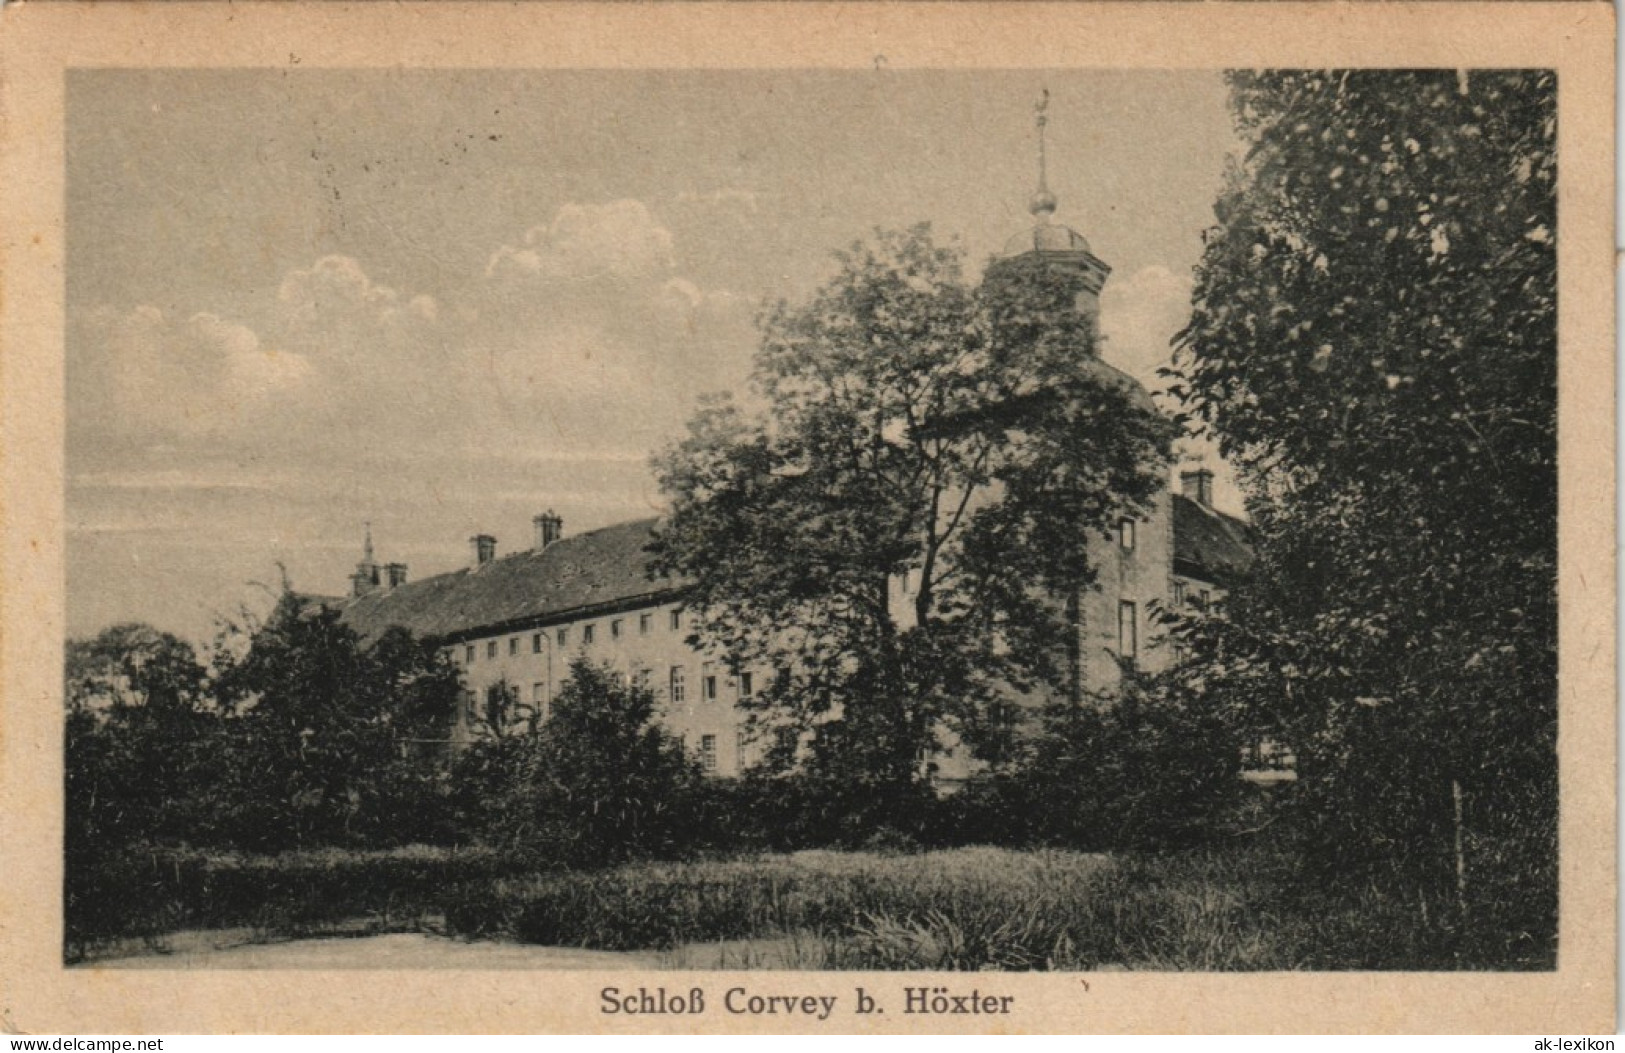 Ansichtskarte Höxter (Weser) Schloß Kloster Corvey 1919   Gel Stempel HÖXTER - Hoexter